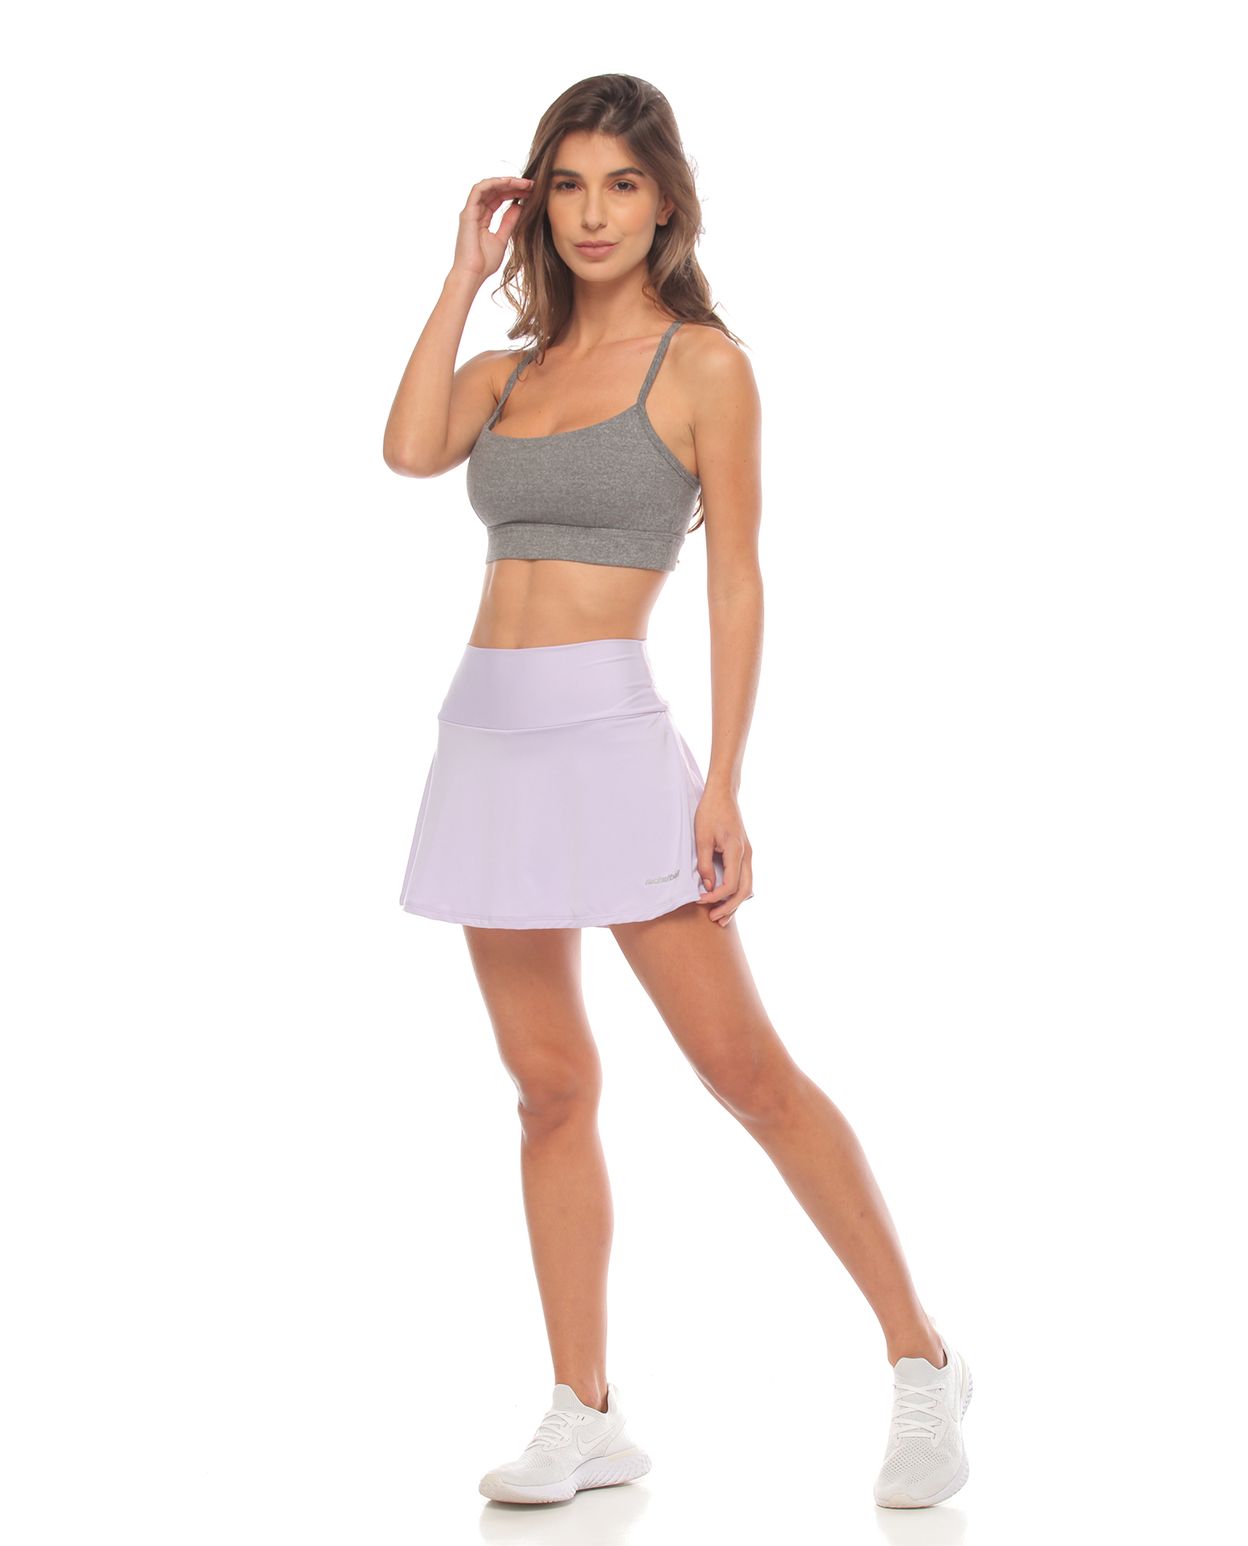 modelo con falda deportiva color lila y top deportivo gris para mujer cuerpo completo